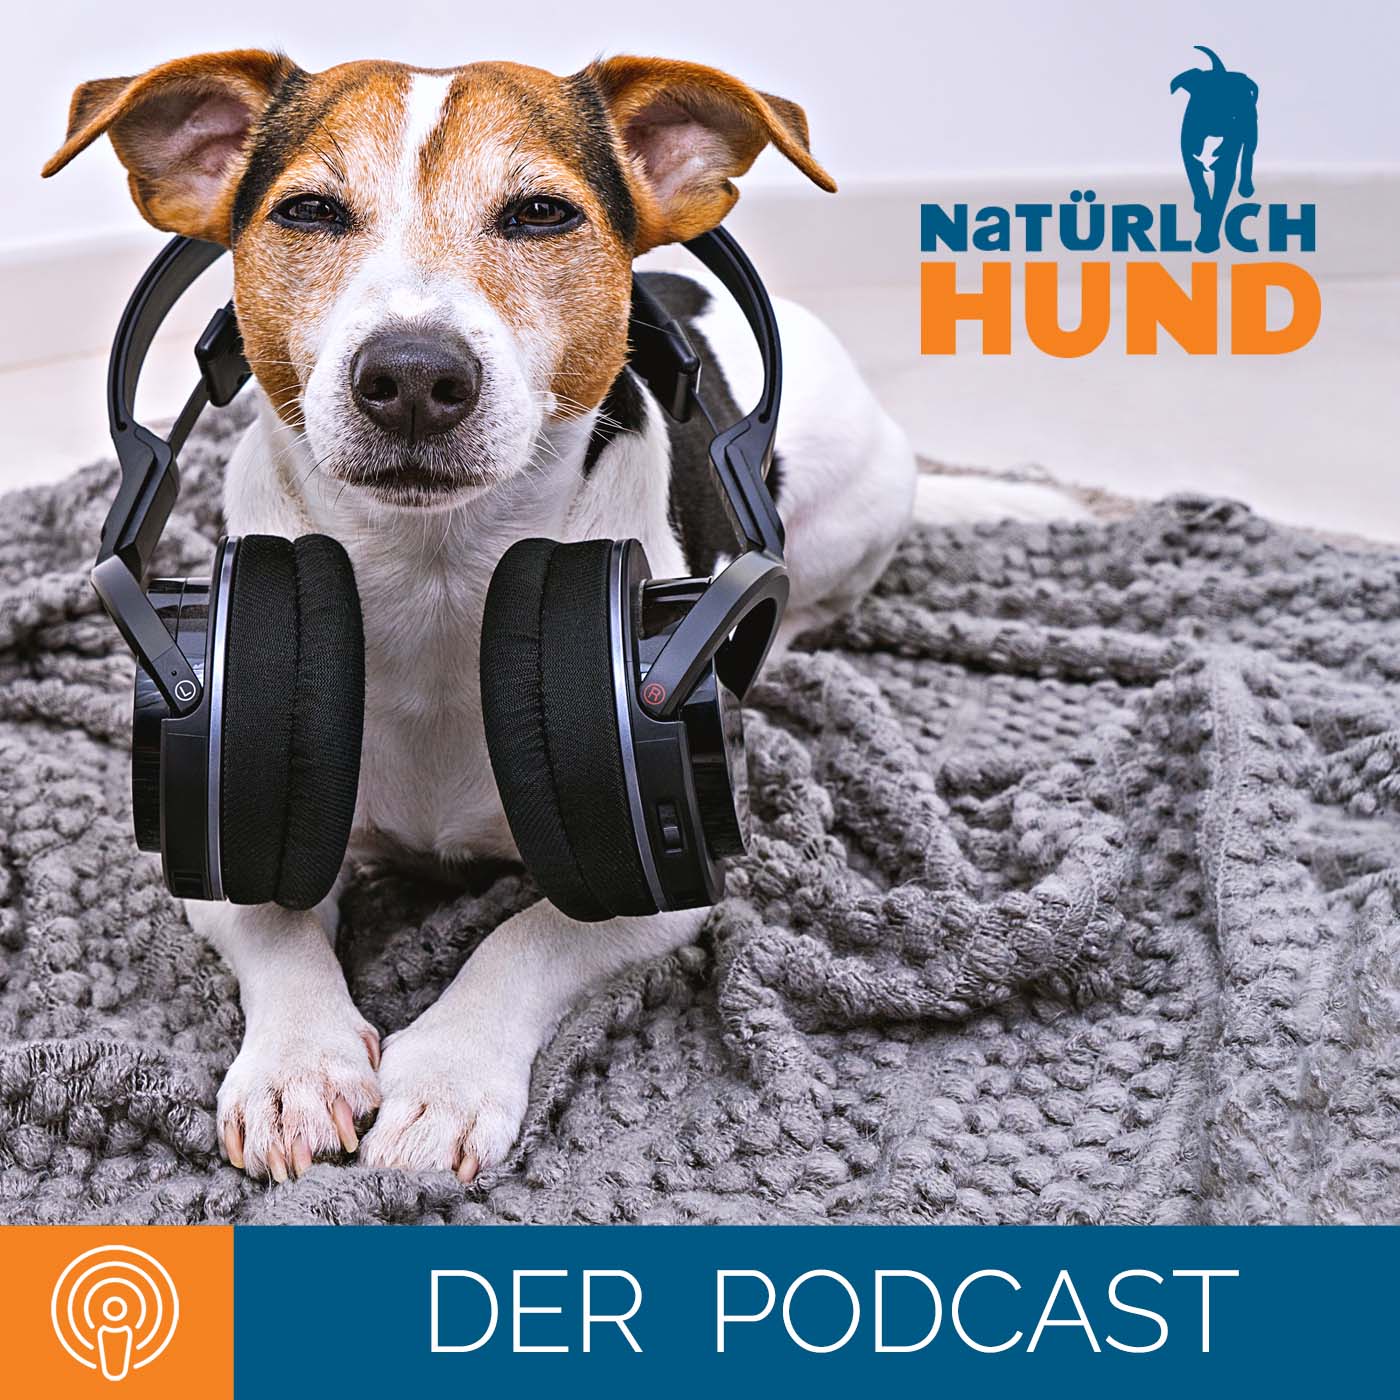 Natürlich-Hund, der Podcast